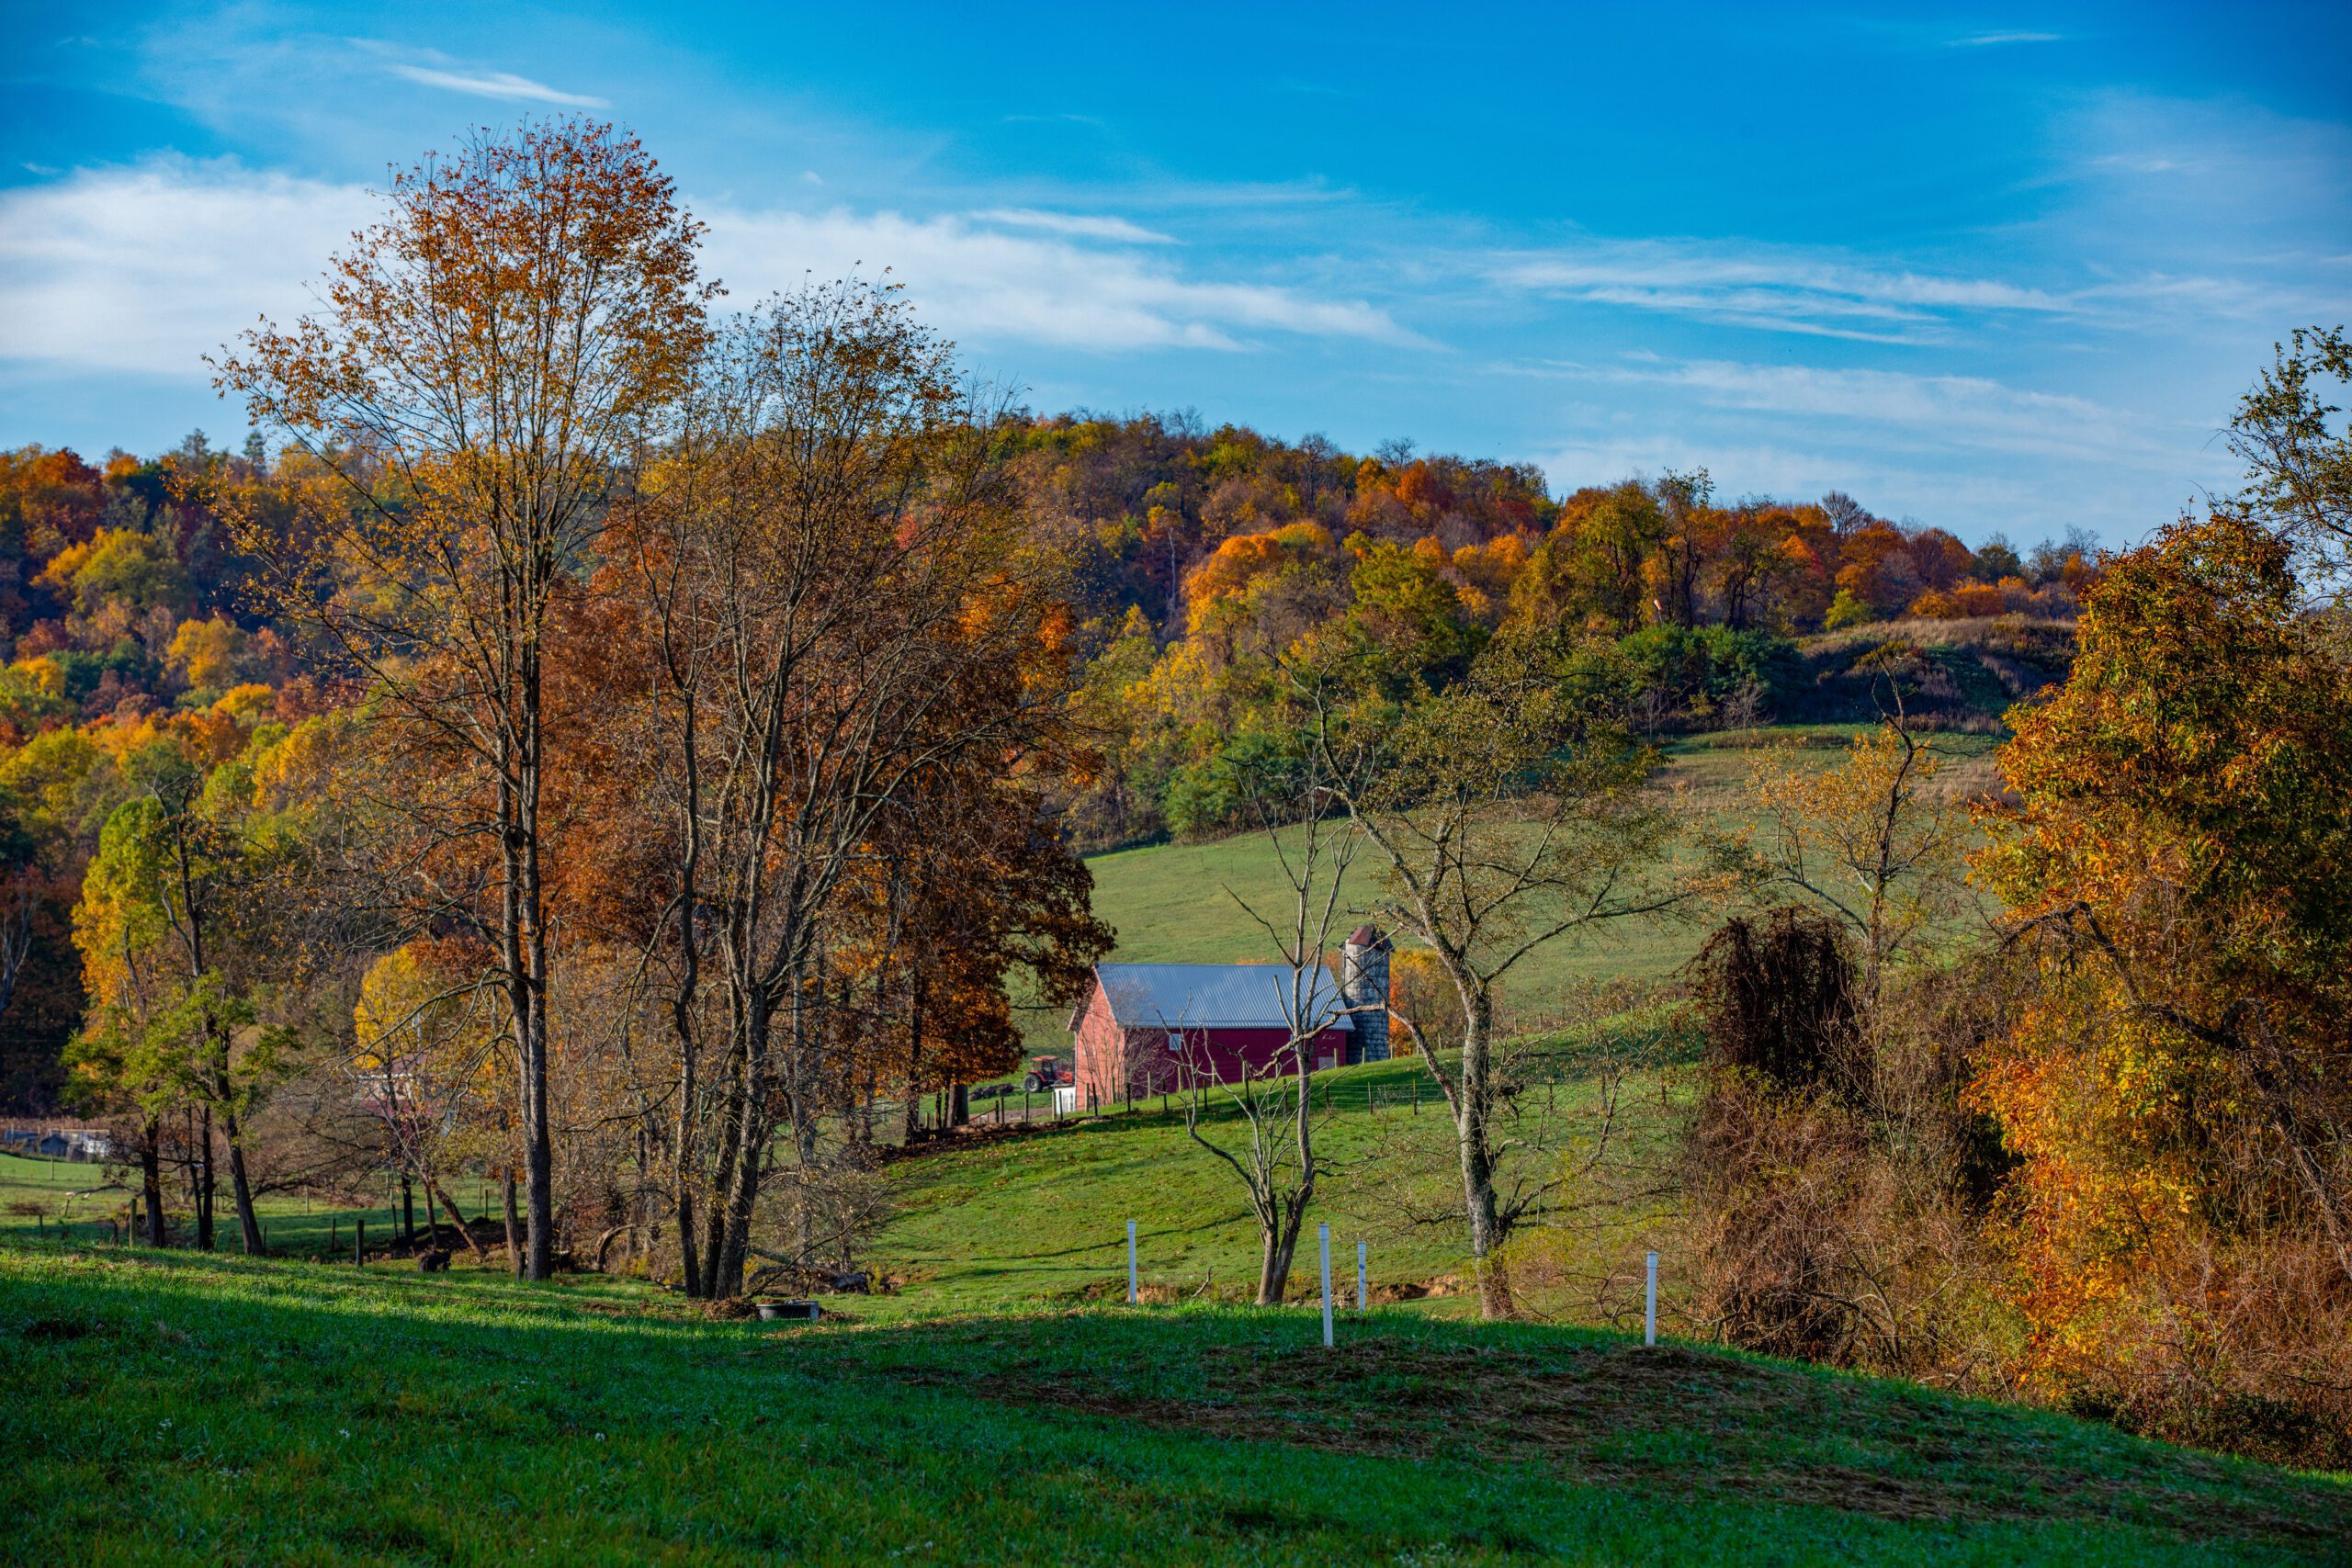 Scenic Pennsylvania farm landscape in fall